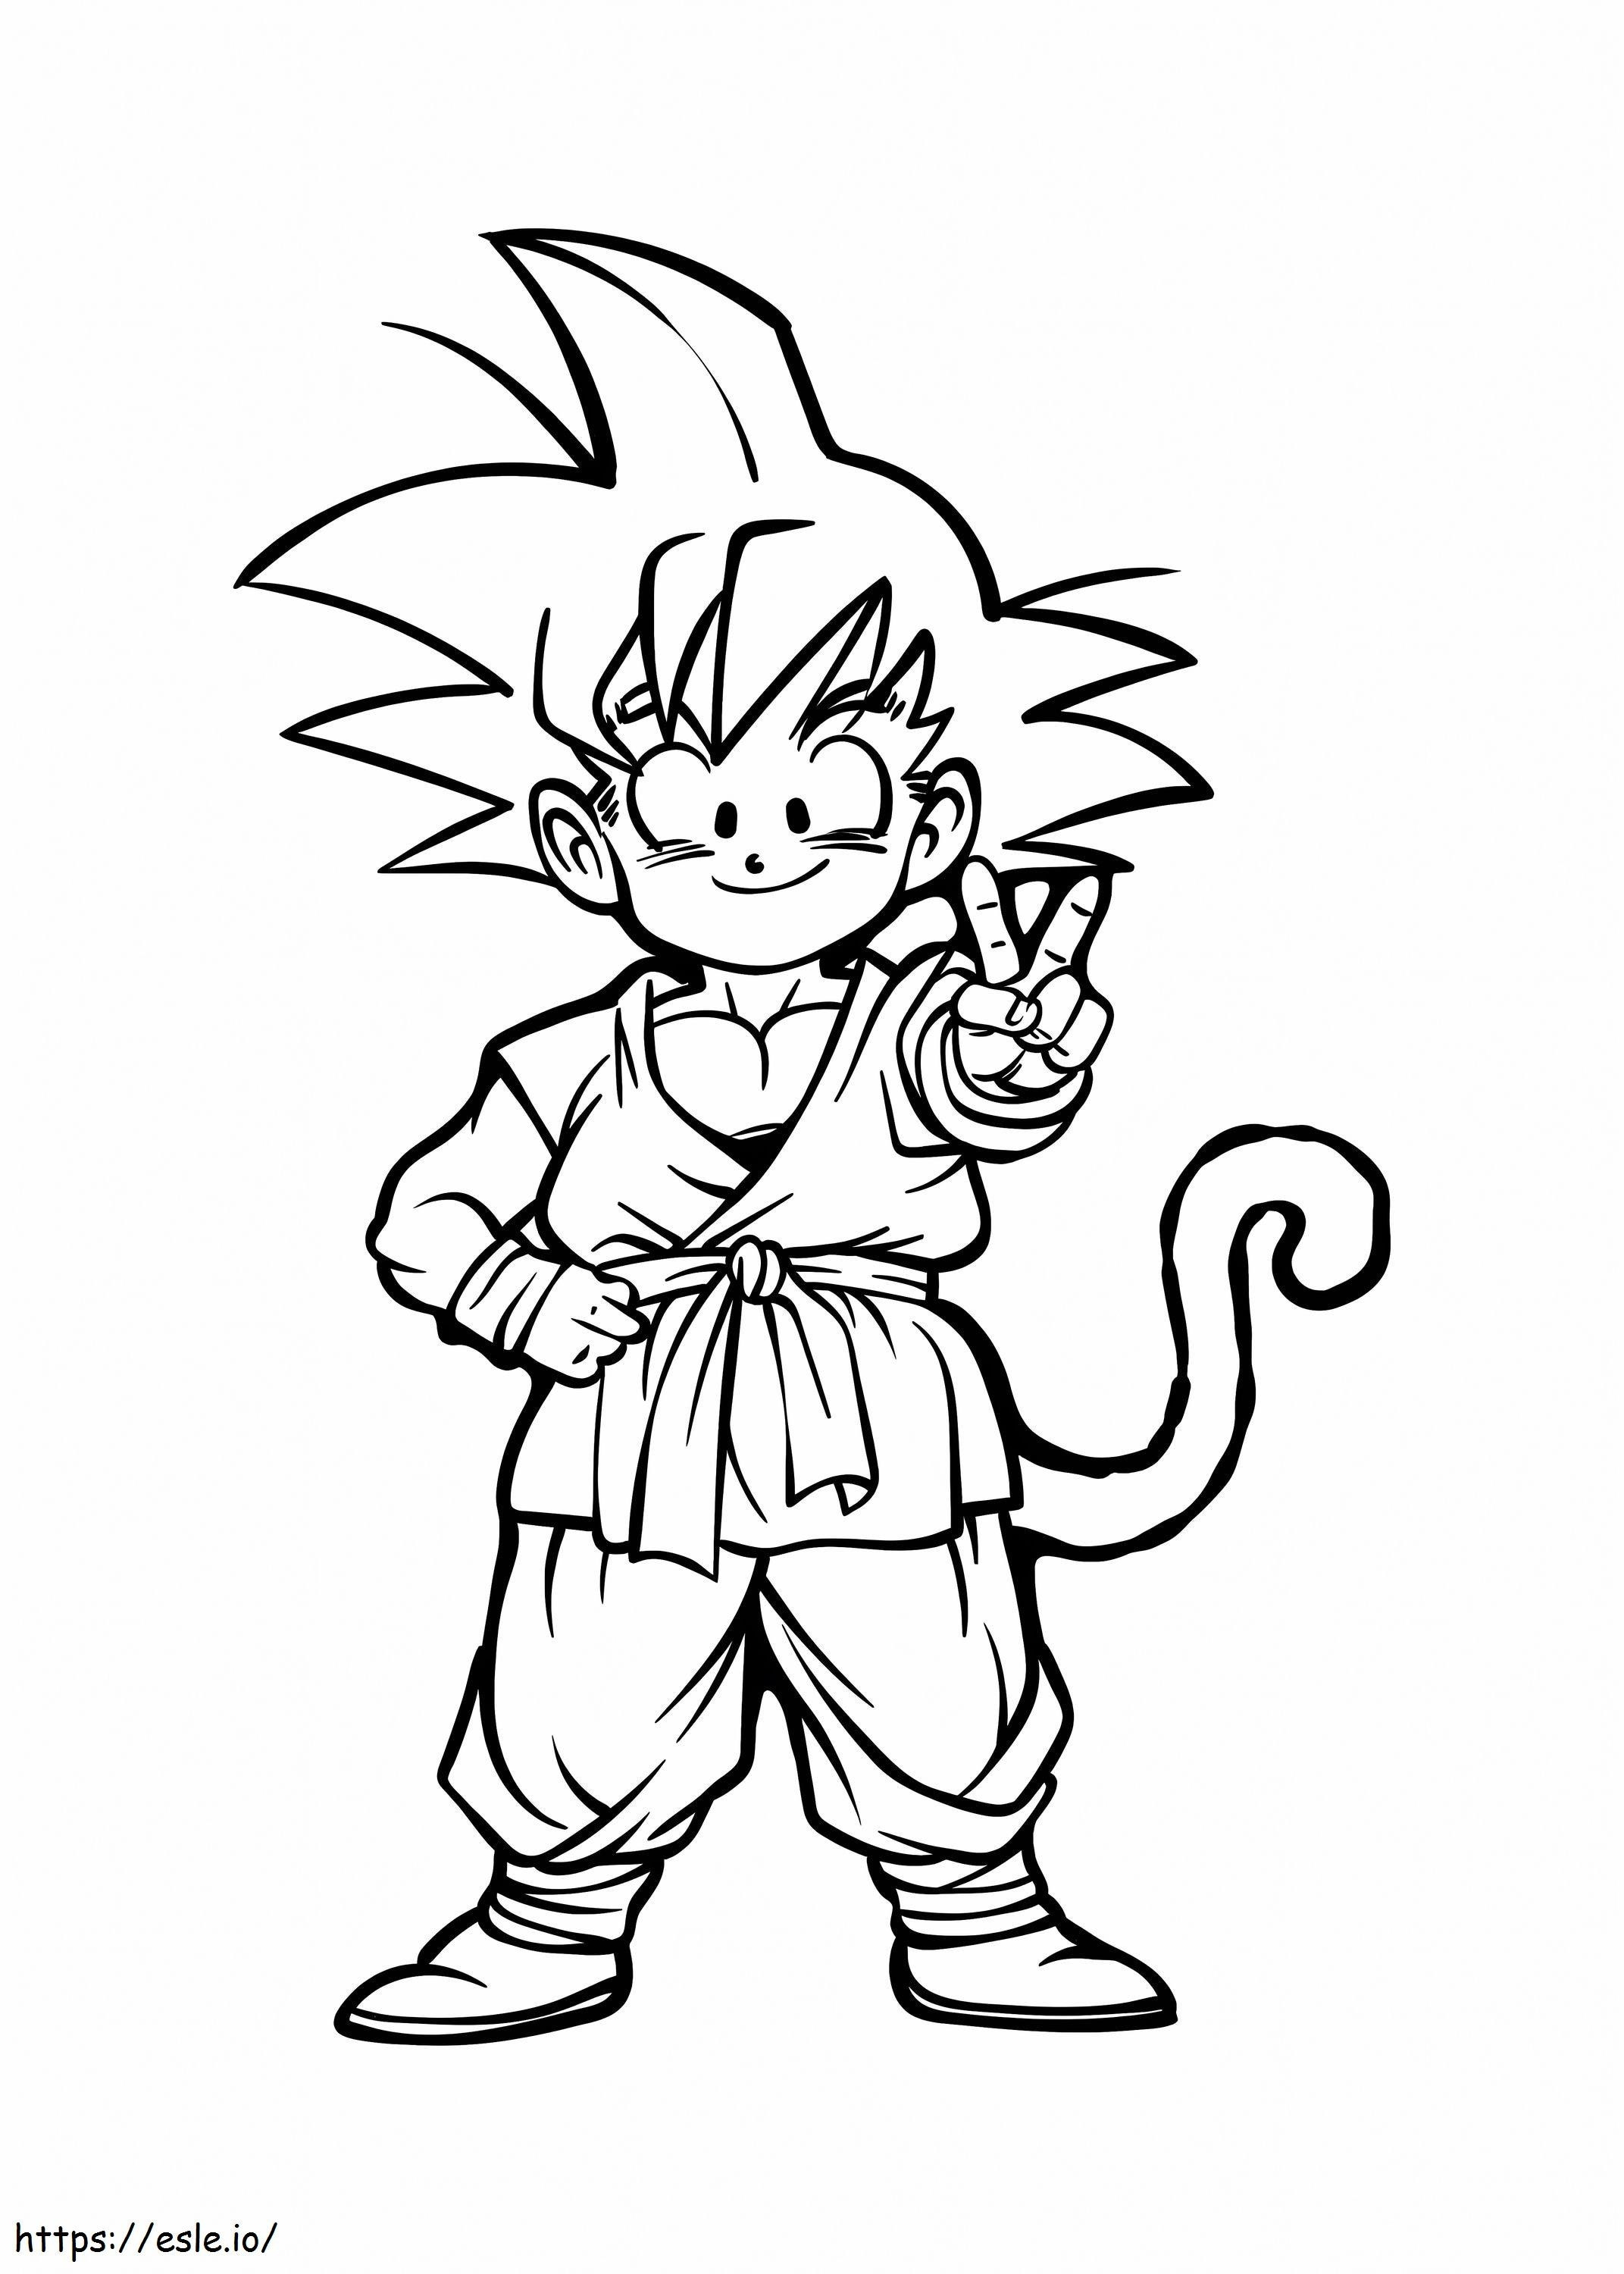 Il piccolo Goku sorridente da colorare